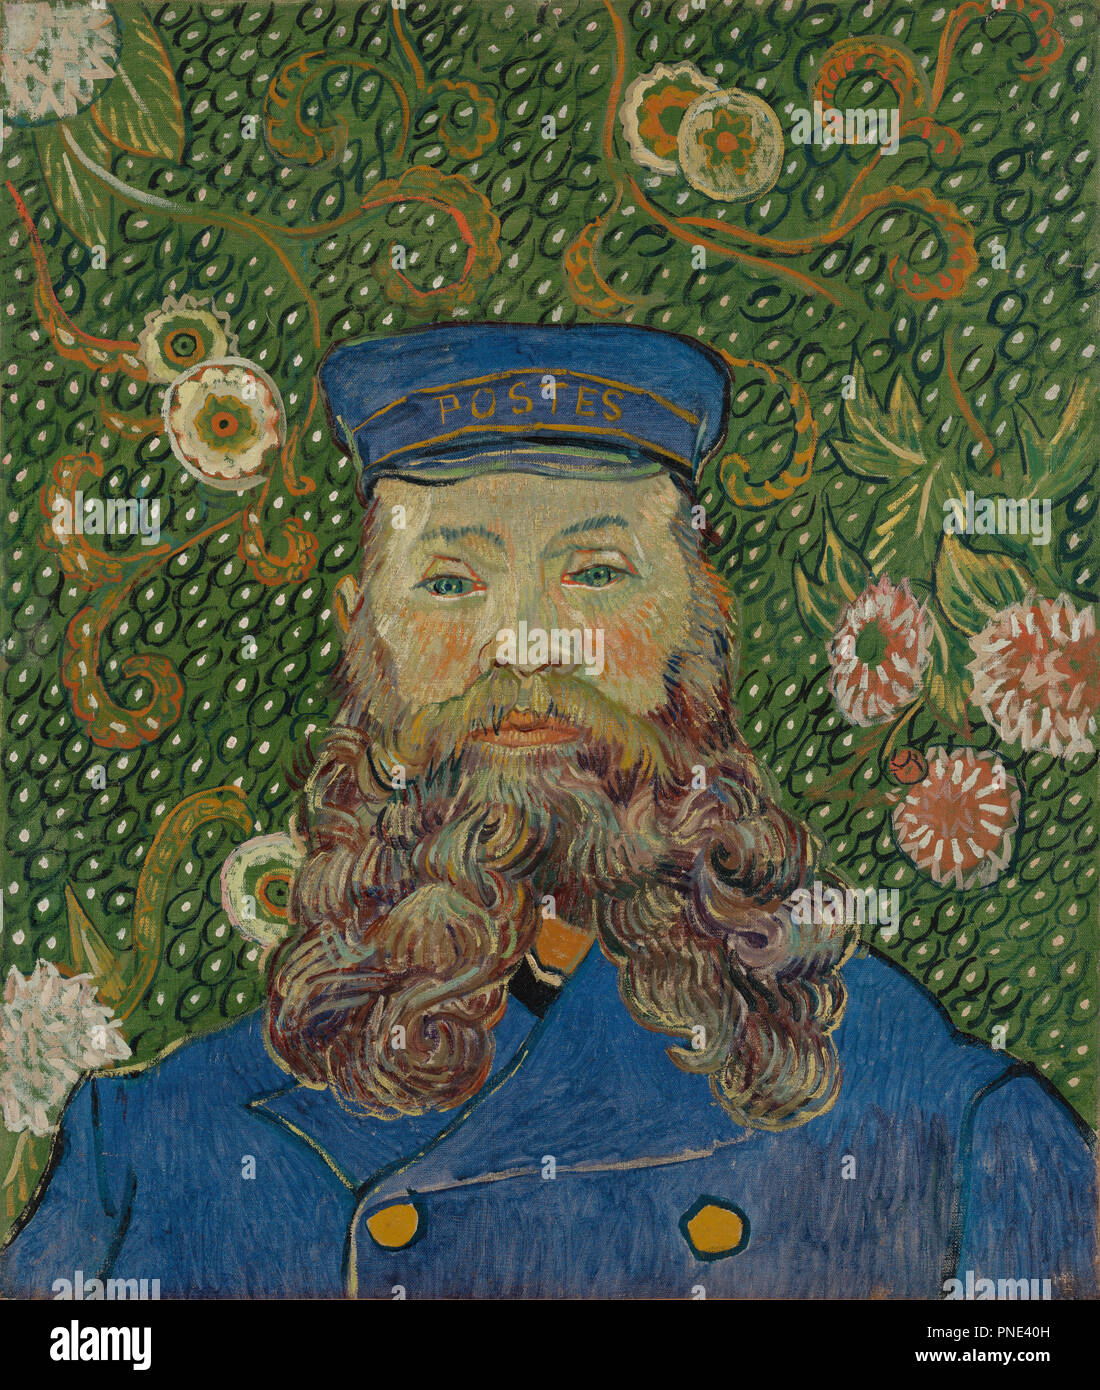 Retrato de Joseph Roulin / Retrato de Joseph Roulin. Fecha/período: 1889. La pintura. Óleo sobre lienzo. Altura: 64,4 cm (25,3"); ancho: 55,2 cm (21.7"). Autor: Vincent van Gogh. VAN GOGH, Vincent. Foto de stock